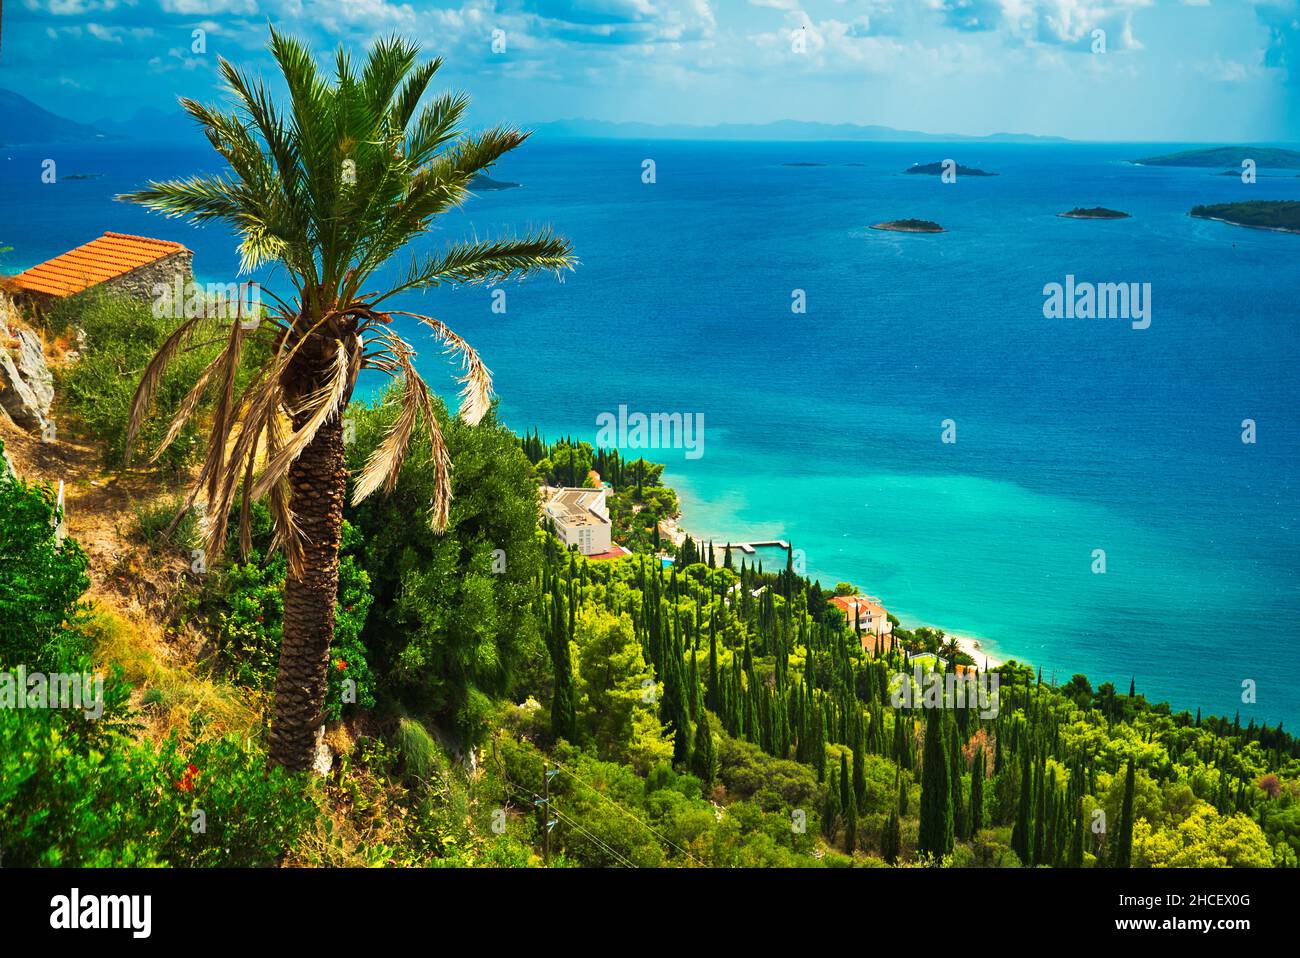 Vista costiera che include una palma, foglie verdi e un oceano limpido con piccole isole in esso Foto Stock